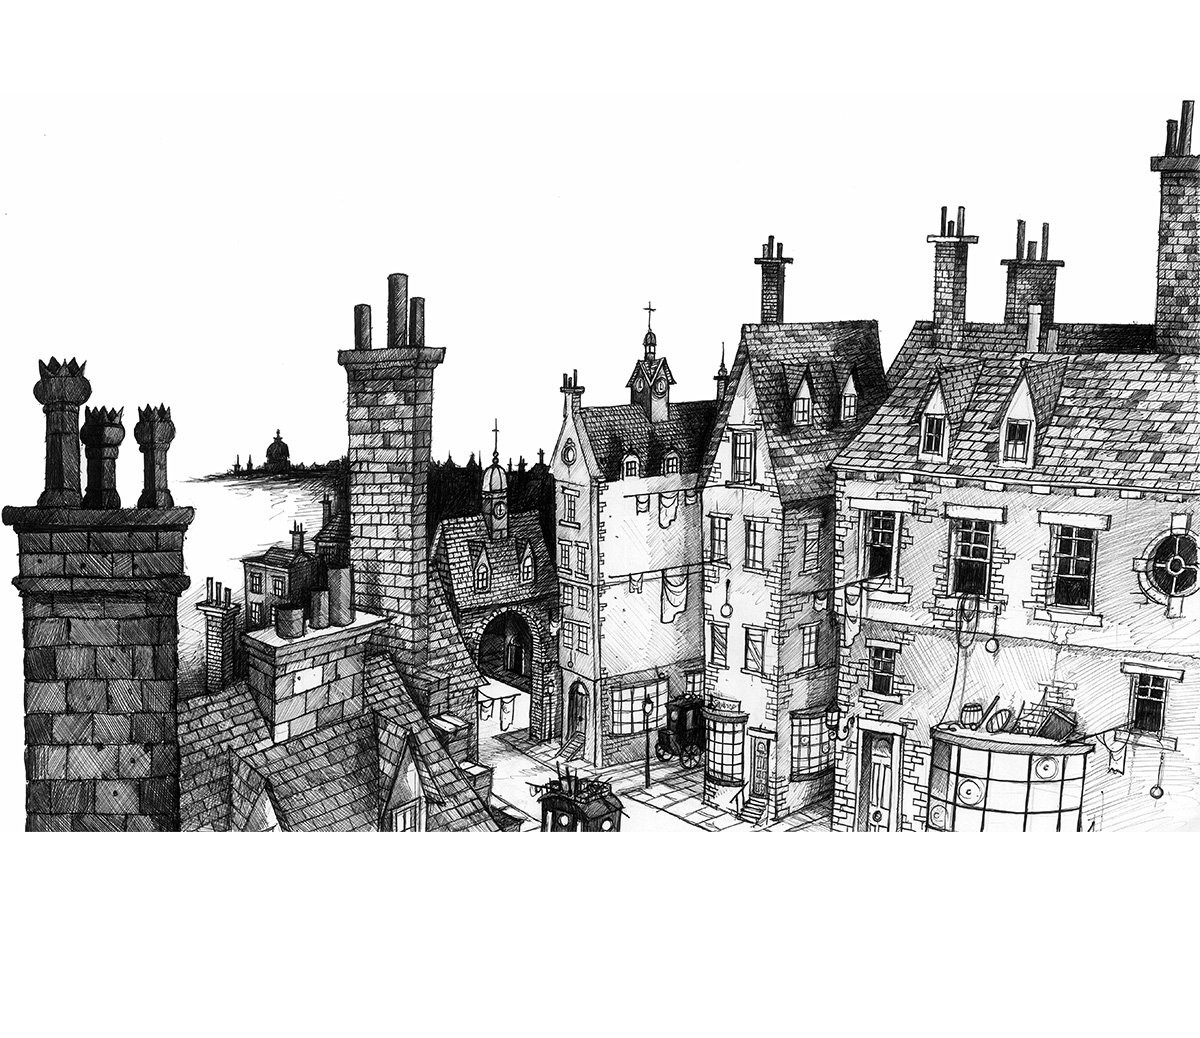 chris-mould-london-scene-illustration.jpg